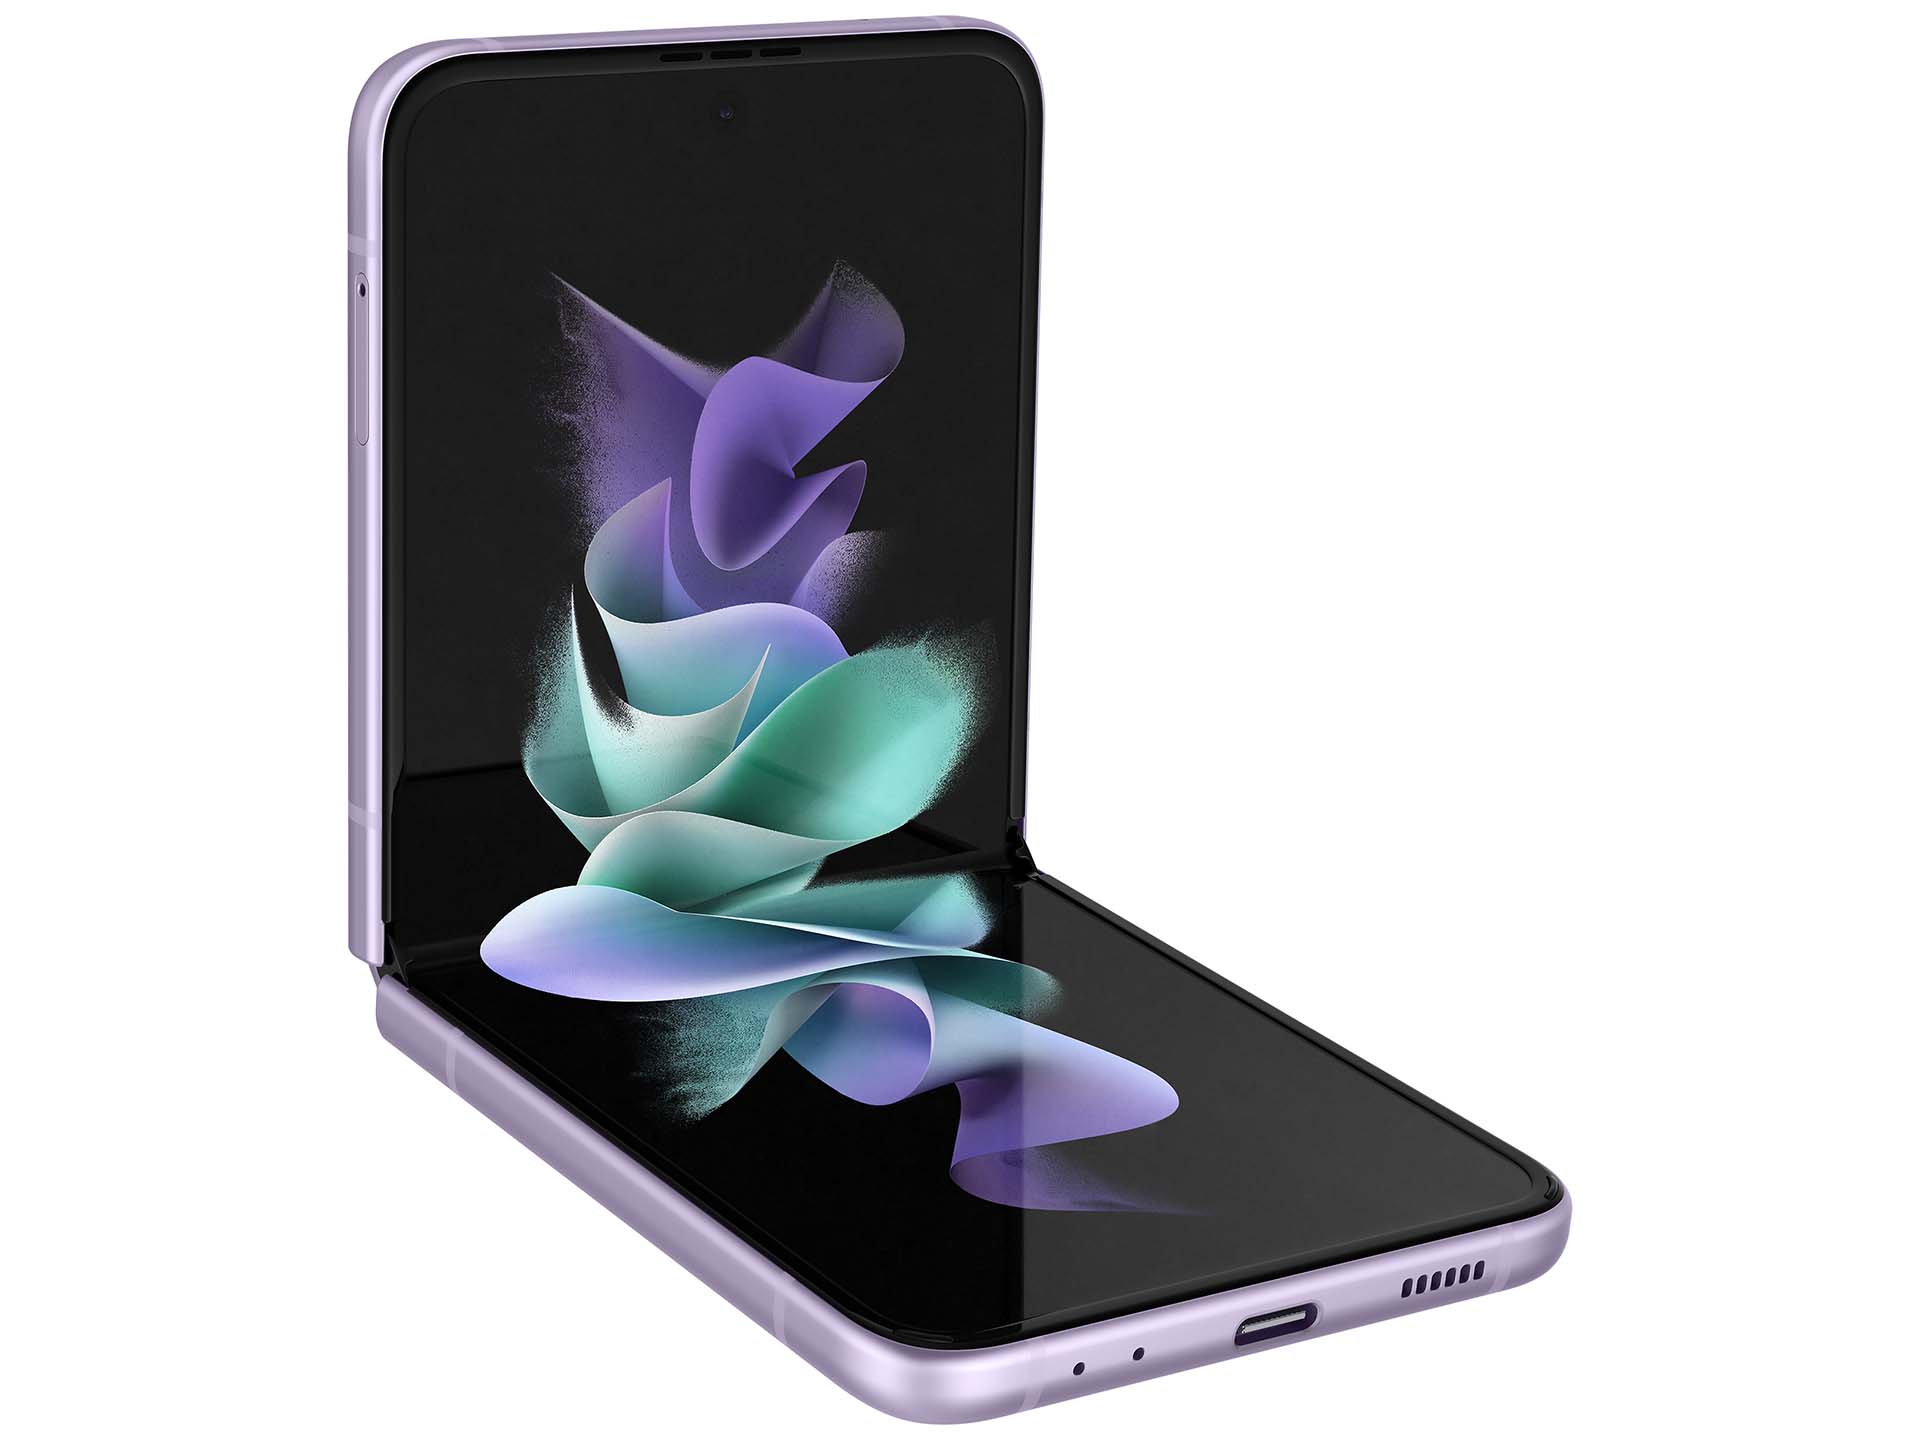 Samsung Galaxy Z Flip3 5G: Bạn sẽ không muốn bỏ lỡ cơ hội để trải nghiệm chiếc điện thoại độc đáo và tuyệt vời này. Samsung Galaxy Z Flip3 5G mang lại một trải nghiệm vô cùng đặc biệt với thiết kế đột phá và tính năng hấp dẫn, sẽ giúp bạn nhanh chóng tiếp cận với những trải nghiệm tuyệt vời nhất.